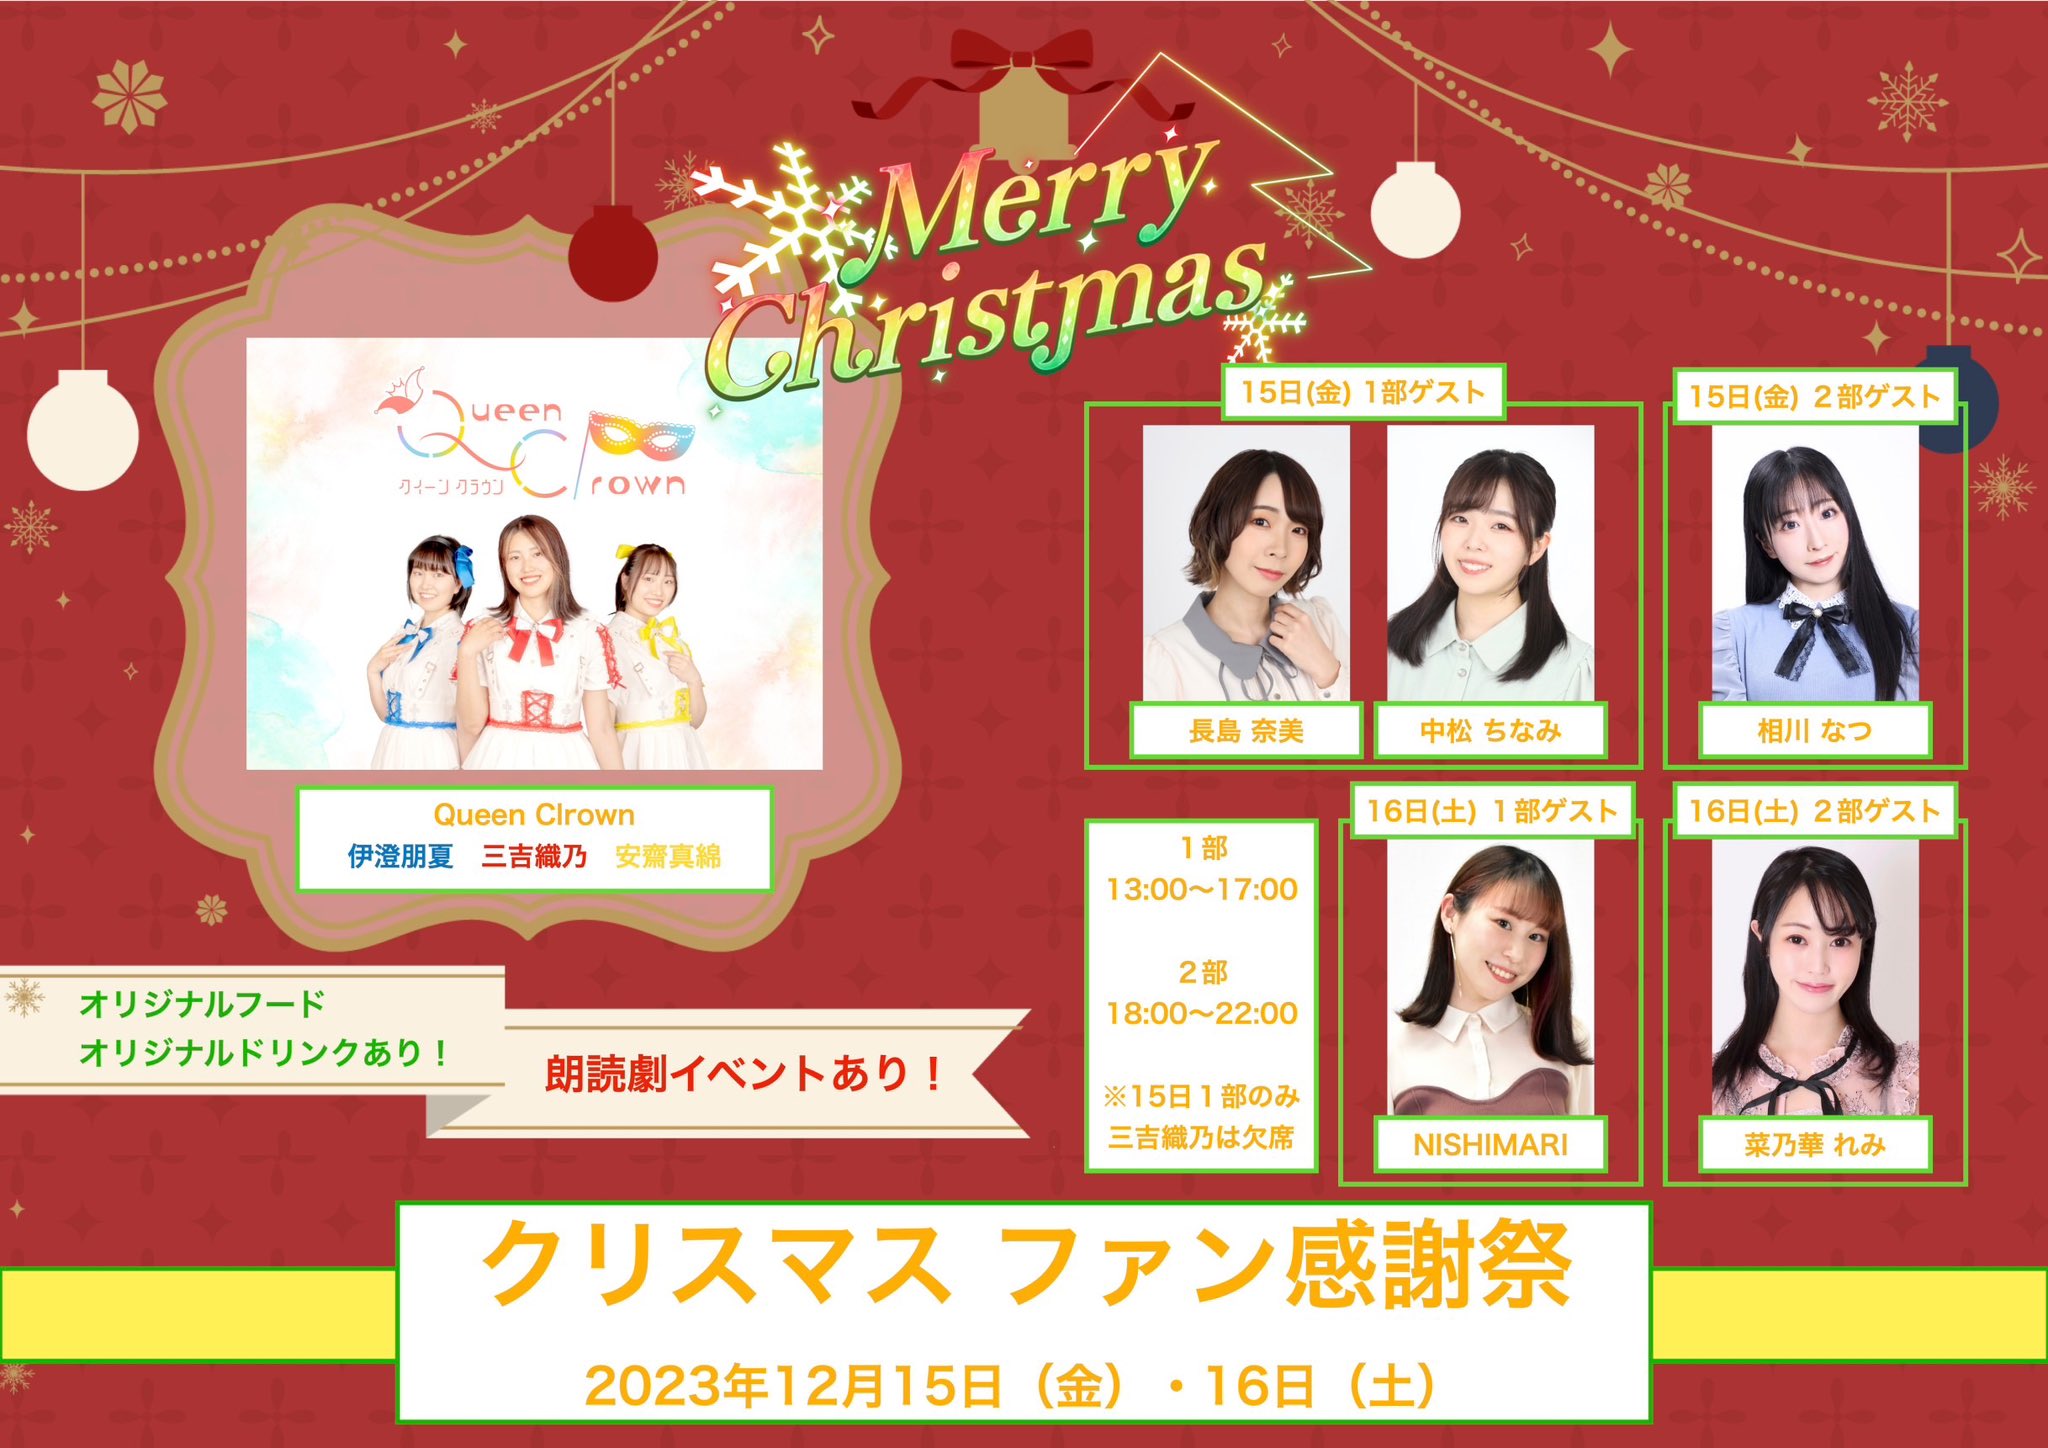 12月15日(金)「Queen Clrown クリスマス ファン感謝祭」2部にゲスト出演します!!!